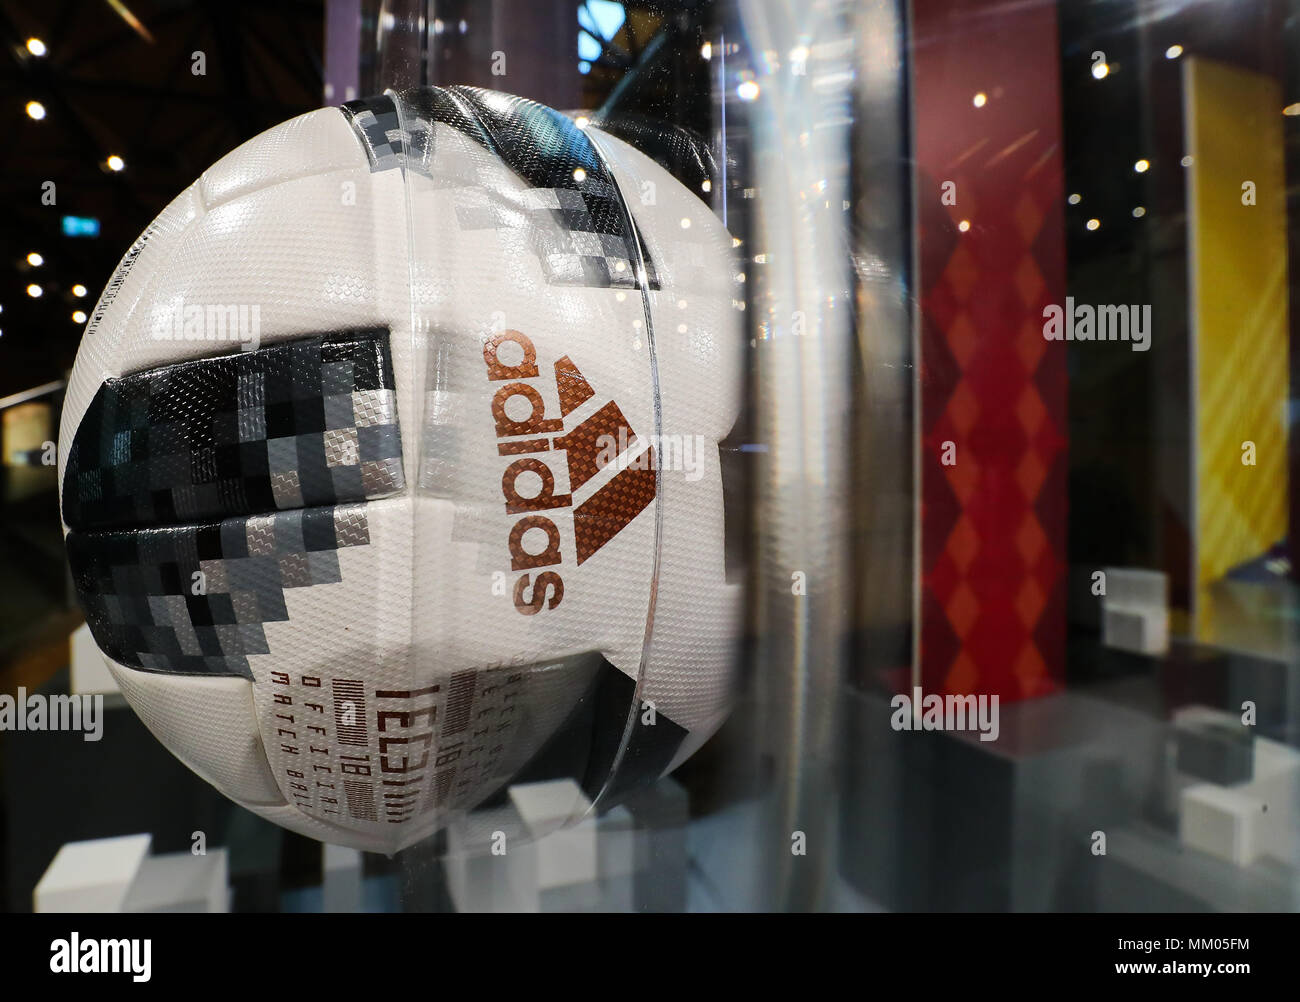 09 Mai 2018, Deutschland, Fürth: Der offizielle Spielball für die WM 2018  in Russland", Adidas Telstar 18', ist auf einem Display im Rahmen der  Hauptversammlung der adidas AG. Foto: Daniel Karmann/dpa Stockfotografie -  Alamy